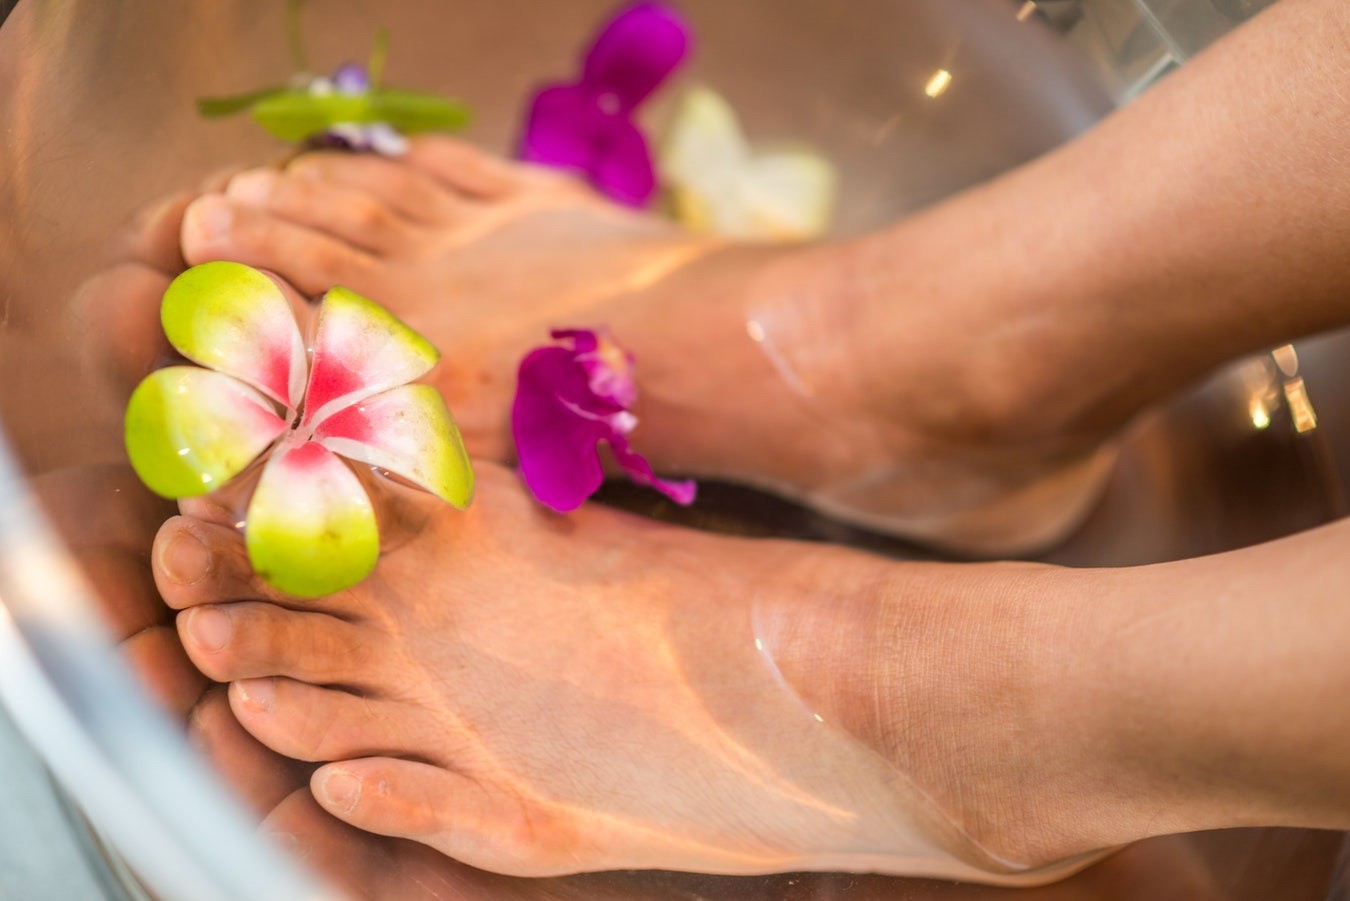 Как правильно делать парафиновые ванночки для рук и ног?